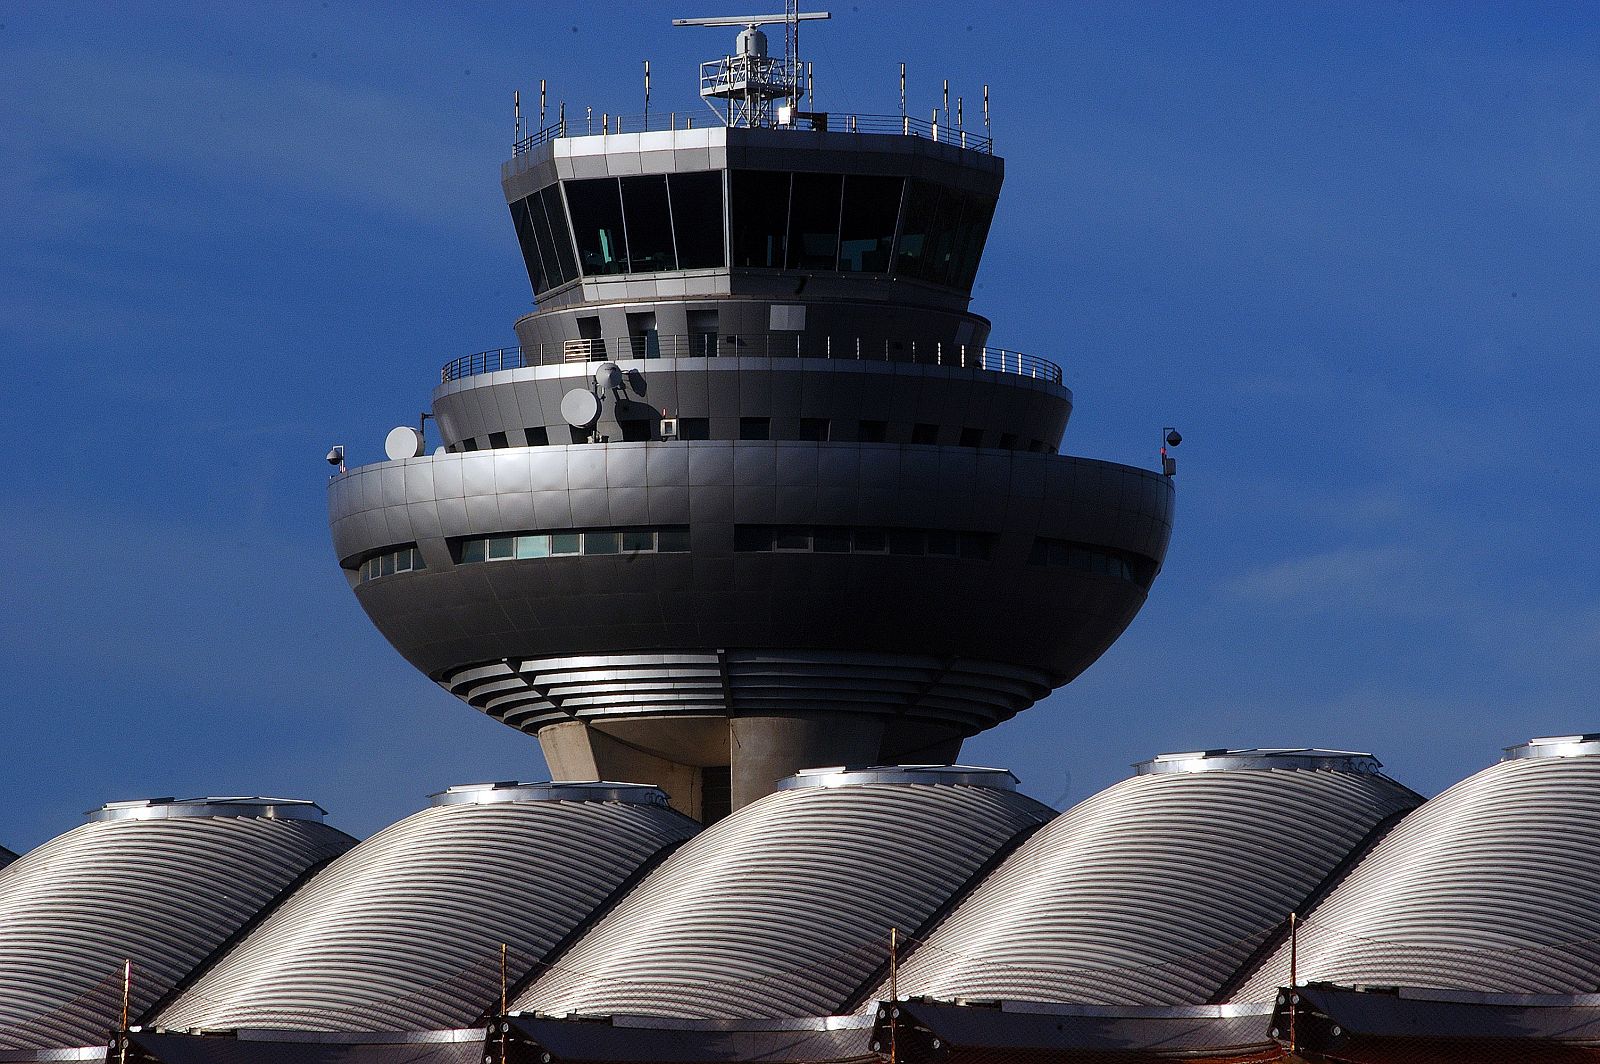 Vista de las plantas superiores de la torre de control del Aeropuerto Adolfo Suárez Madrid-Barajas